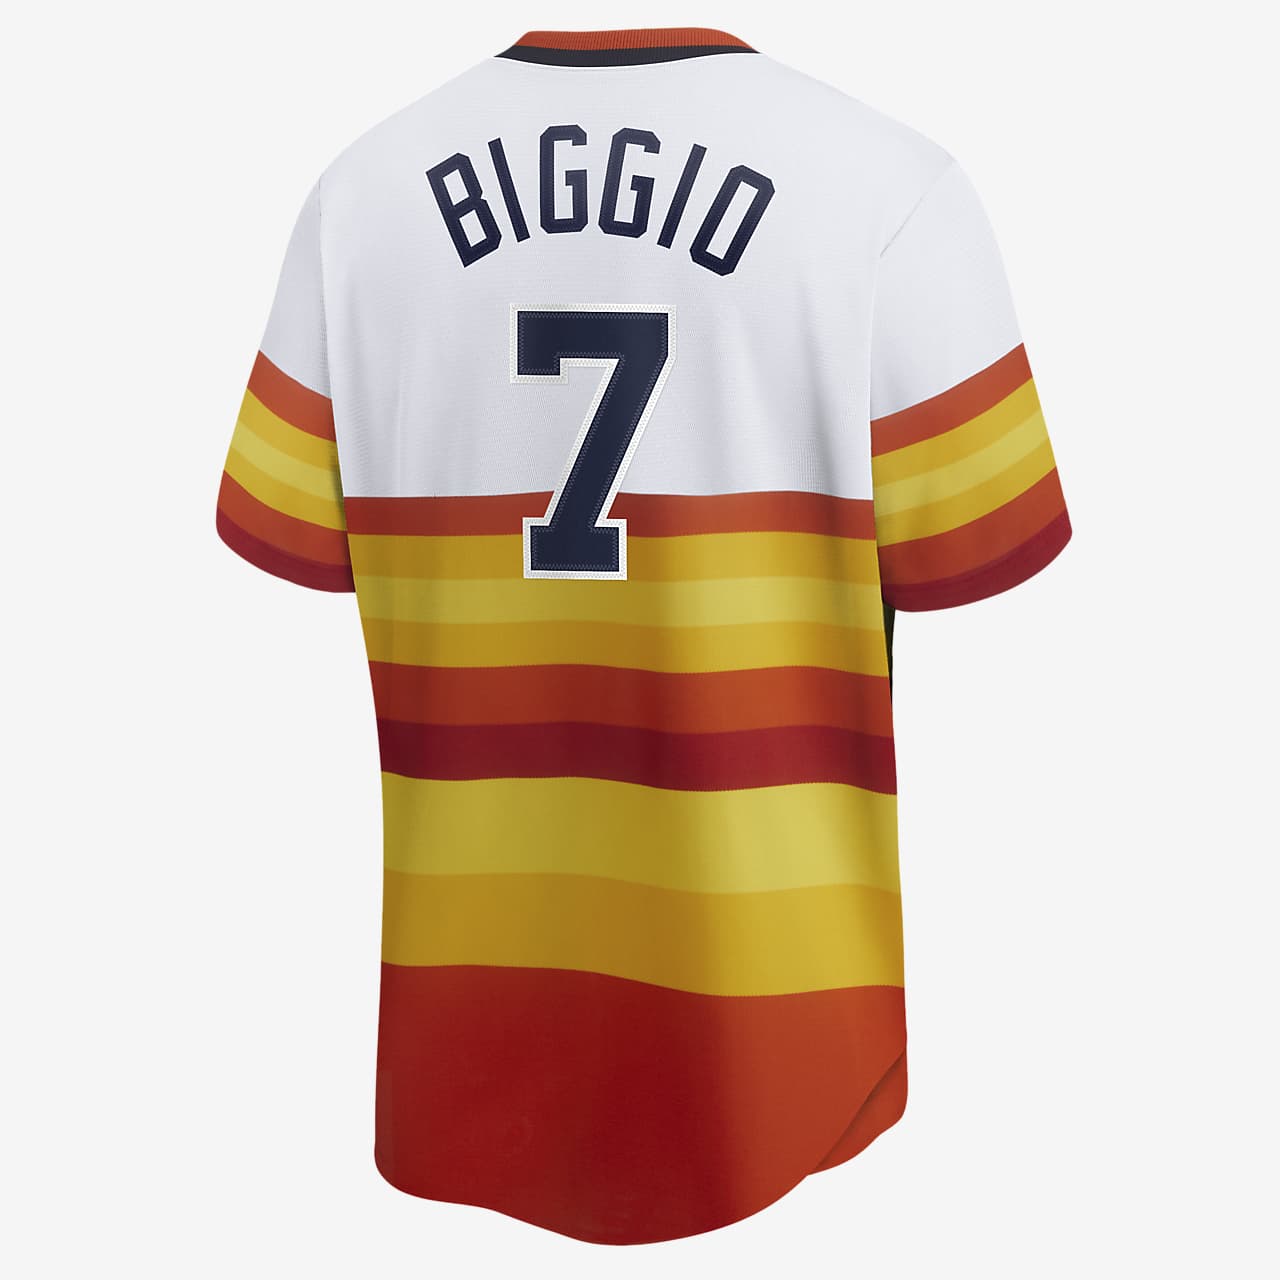 craig biggio jersey for sale